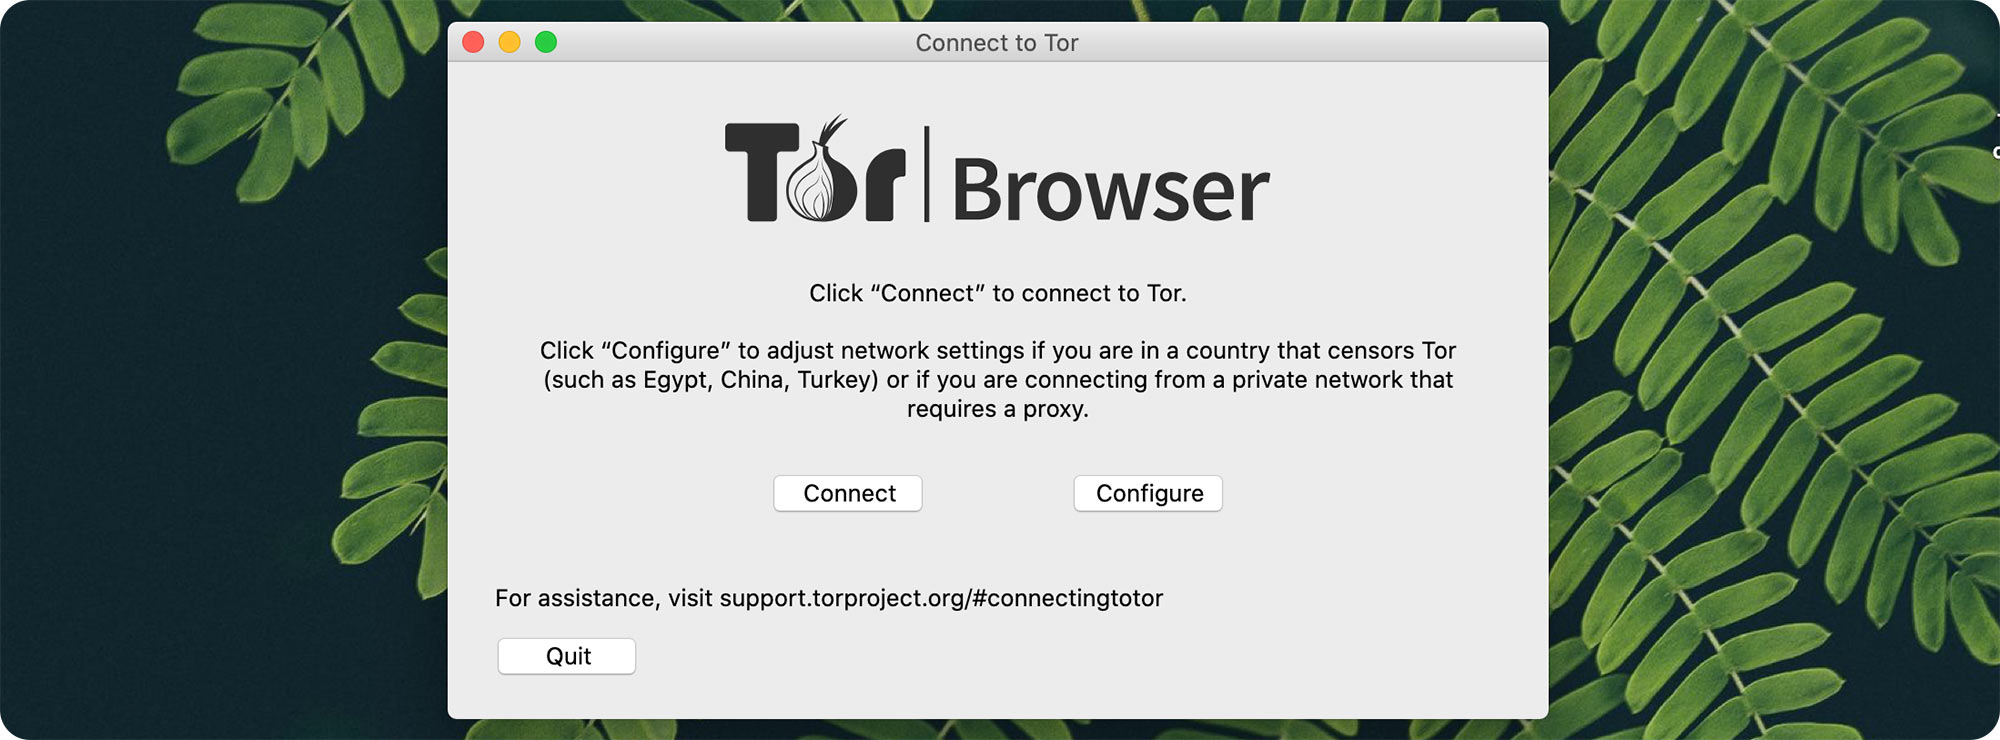 Browser tor for mac gidra ссылки запрещенных сайтов для тор браузера вход на гидру